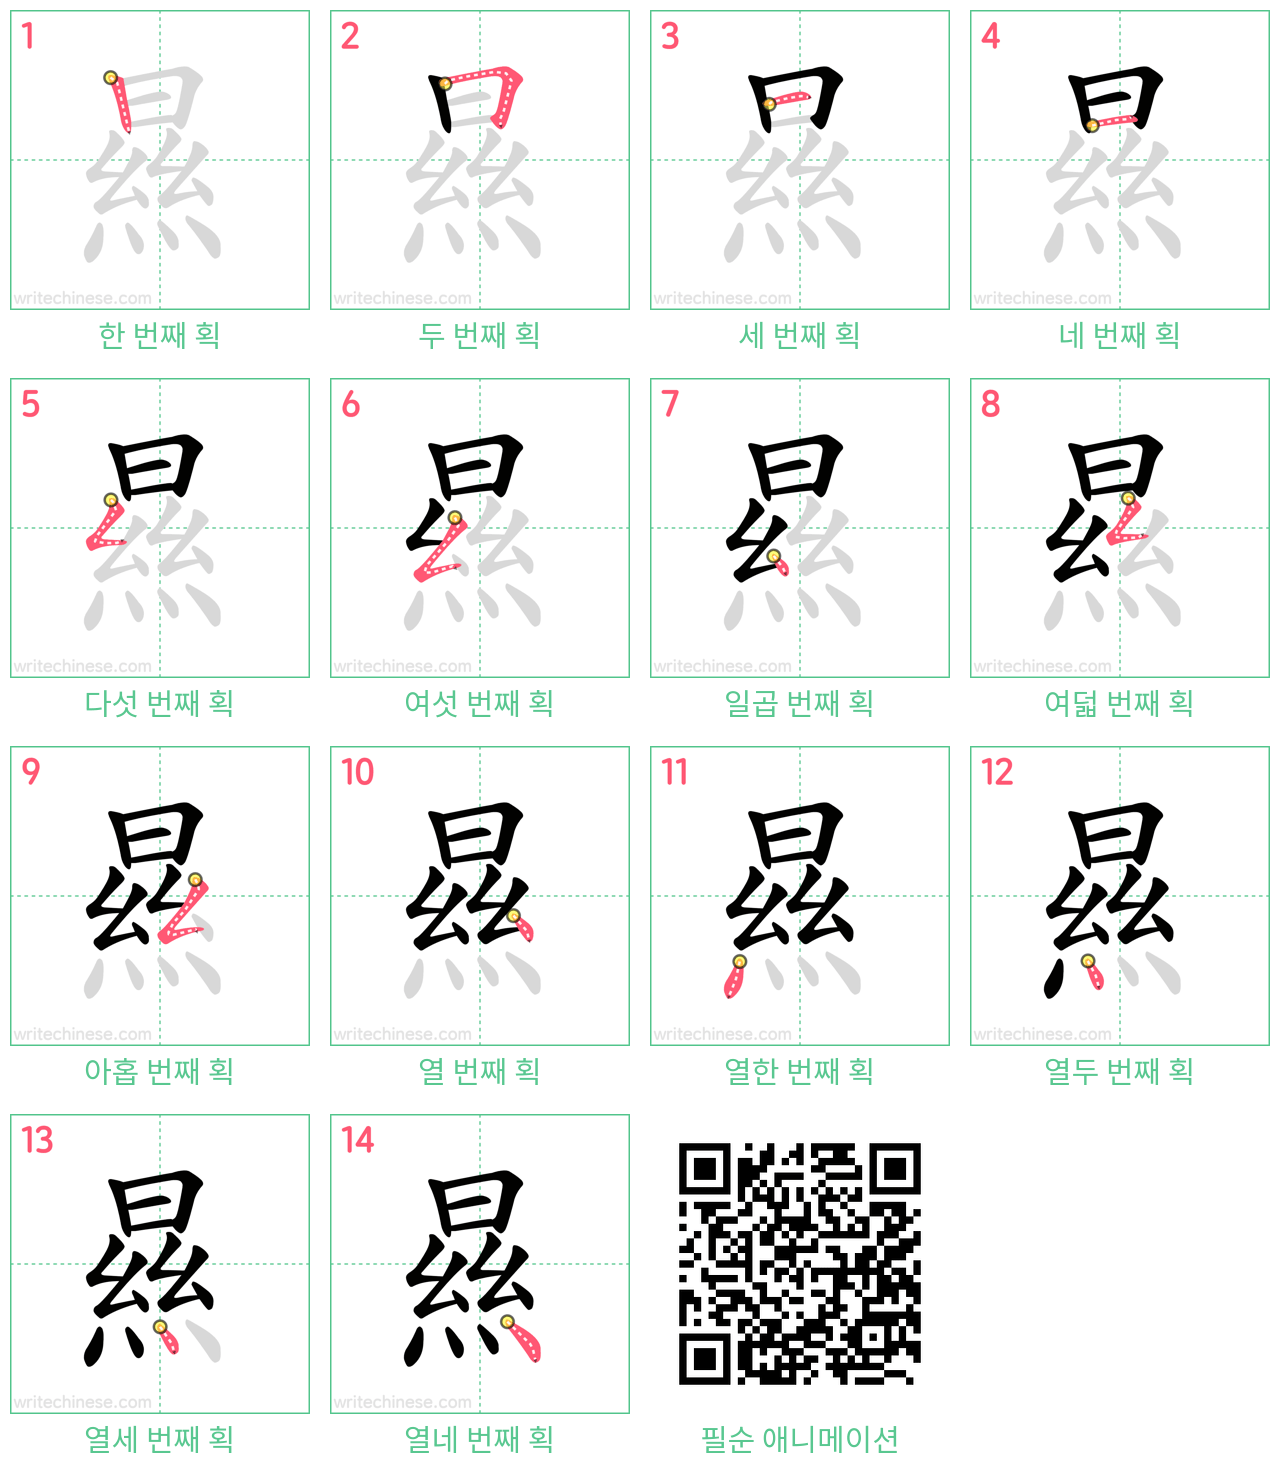 㬎 step-by-step stroke order diagrams